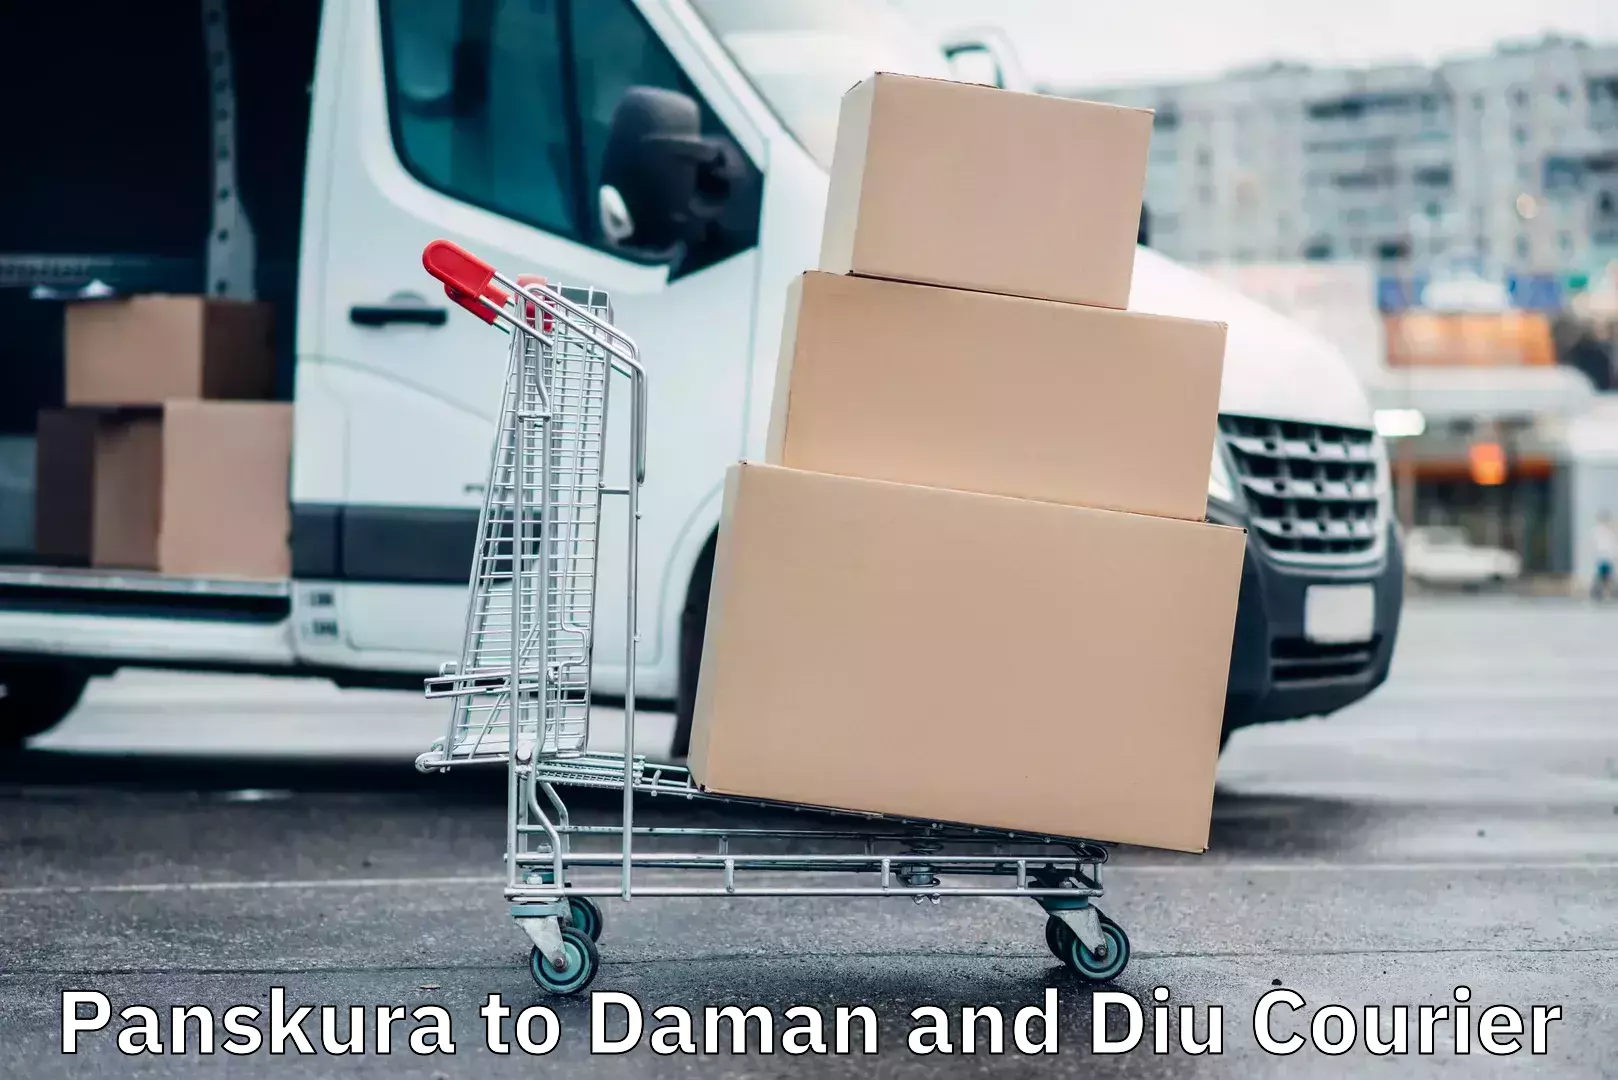 International courier rates Panskura to Daman and Diu